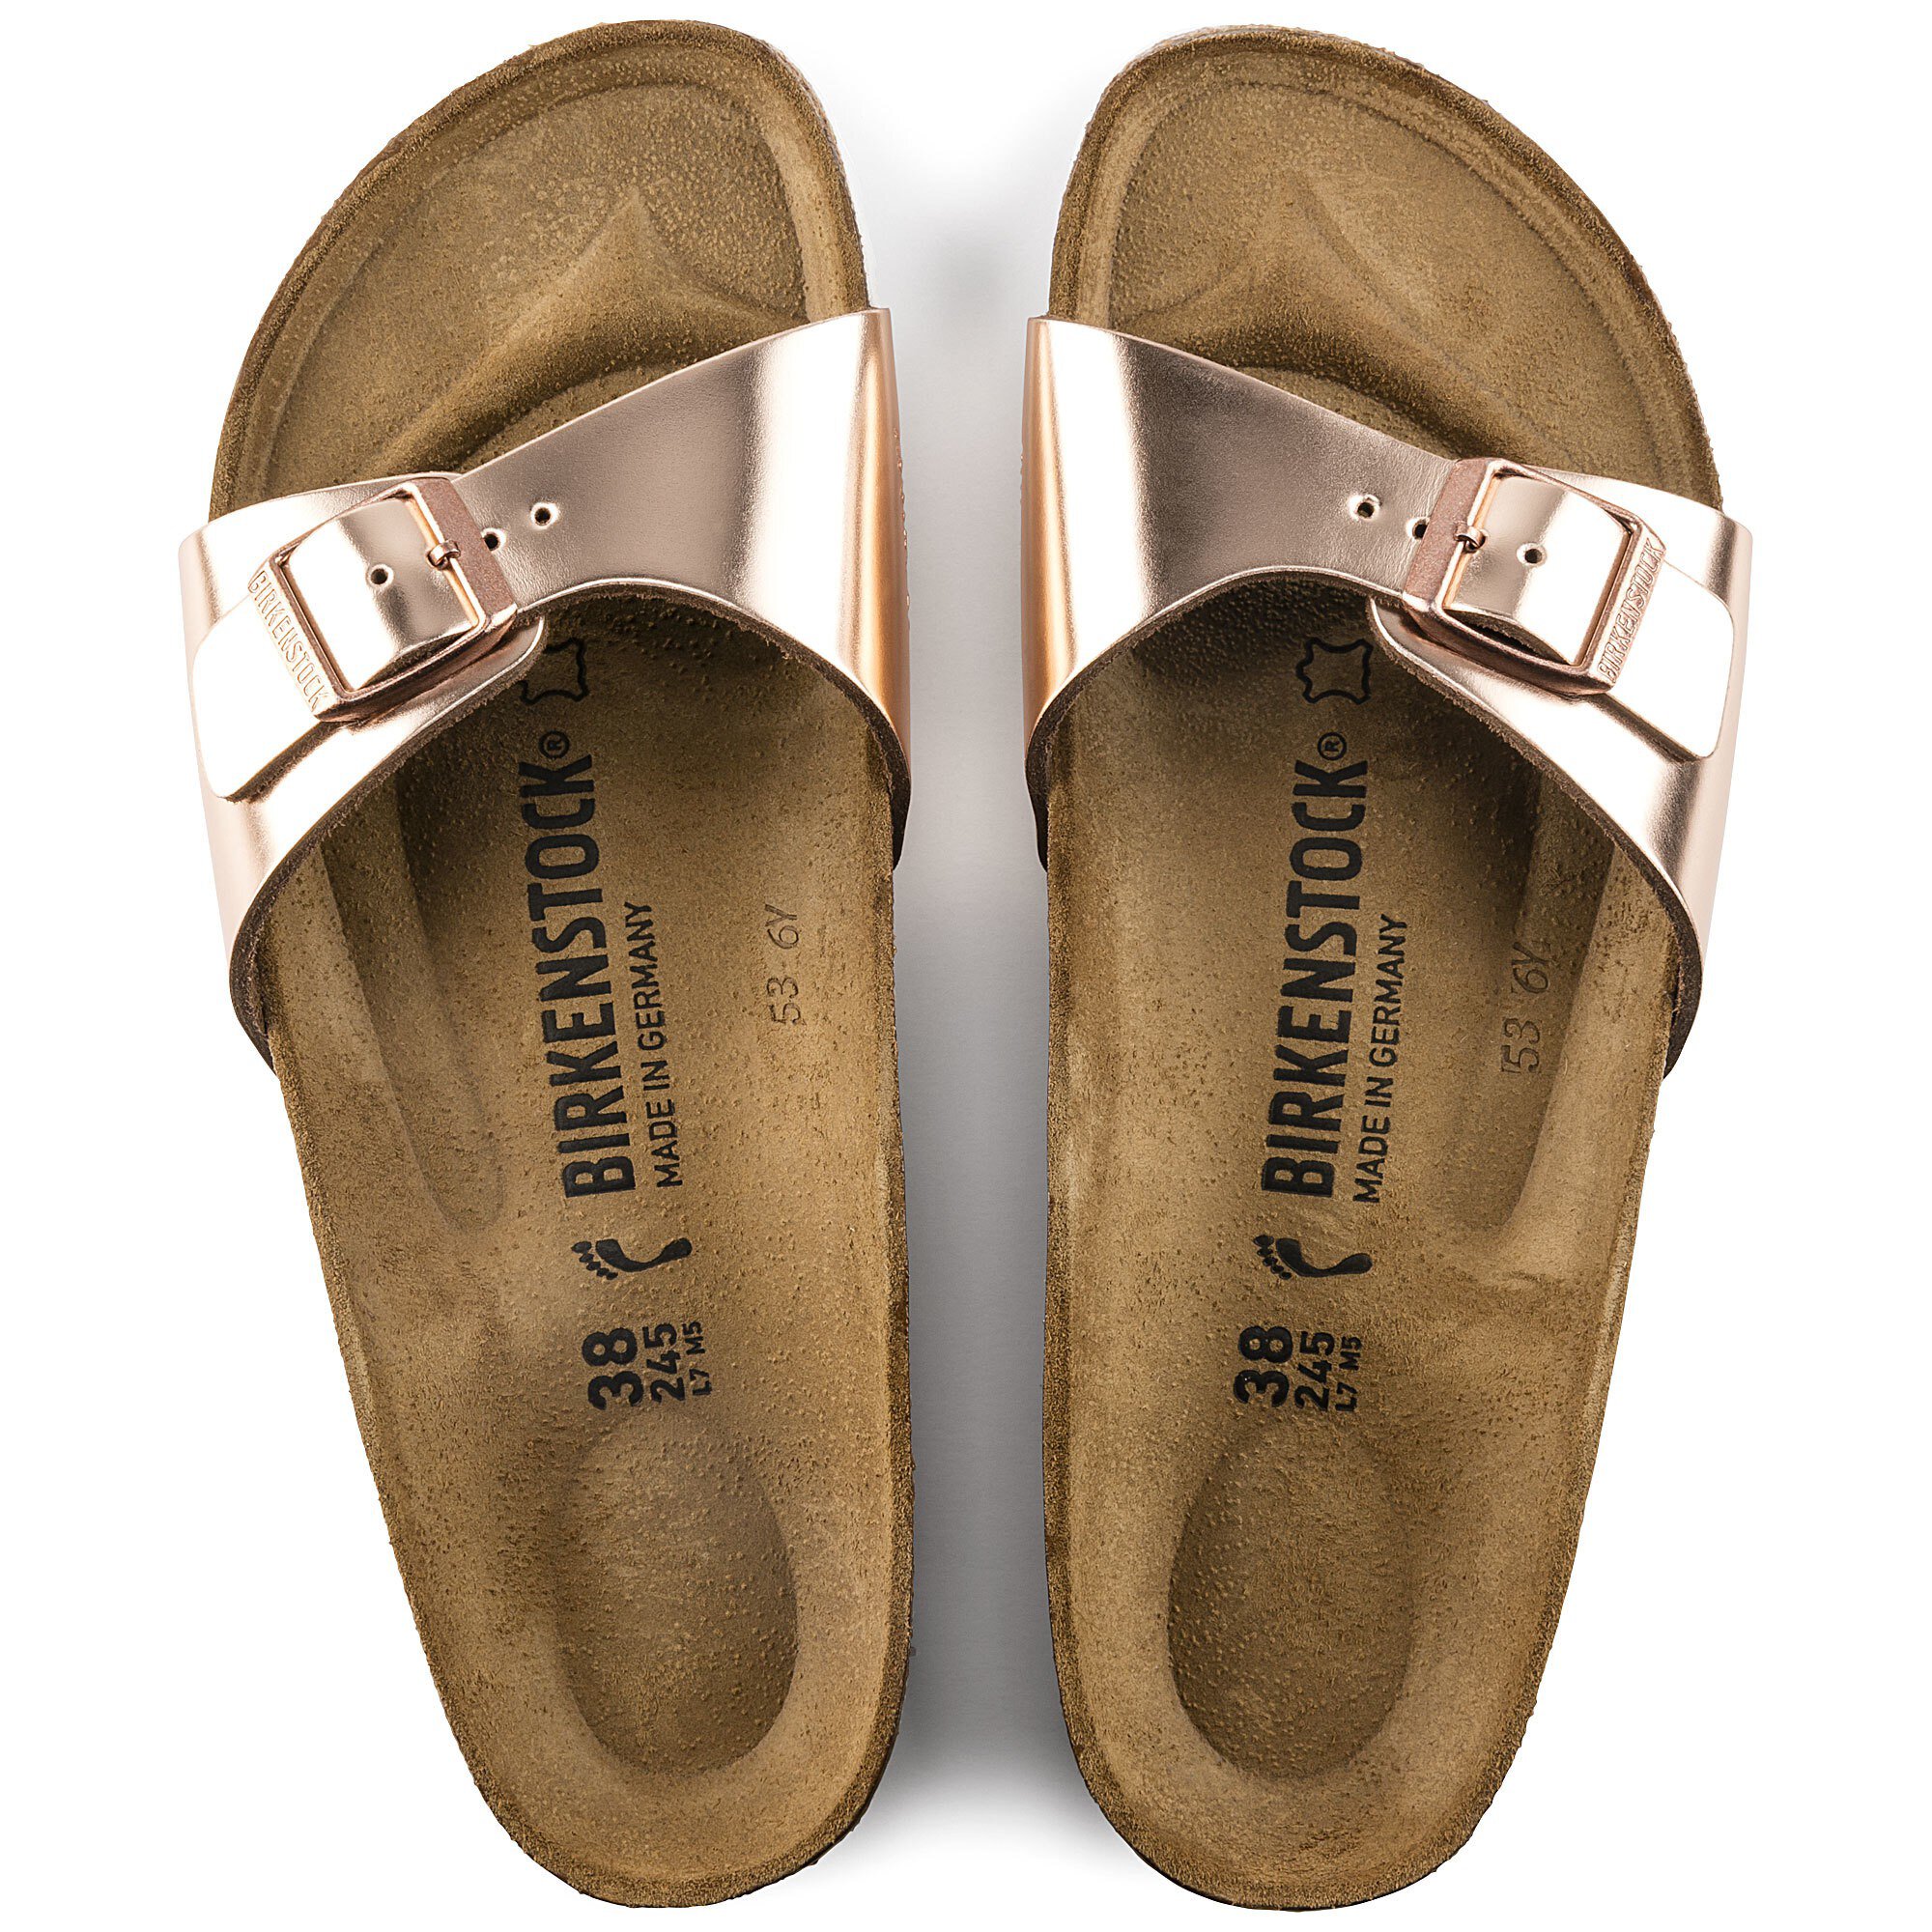 metallic birkenstock sandals